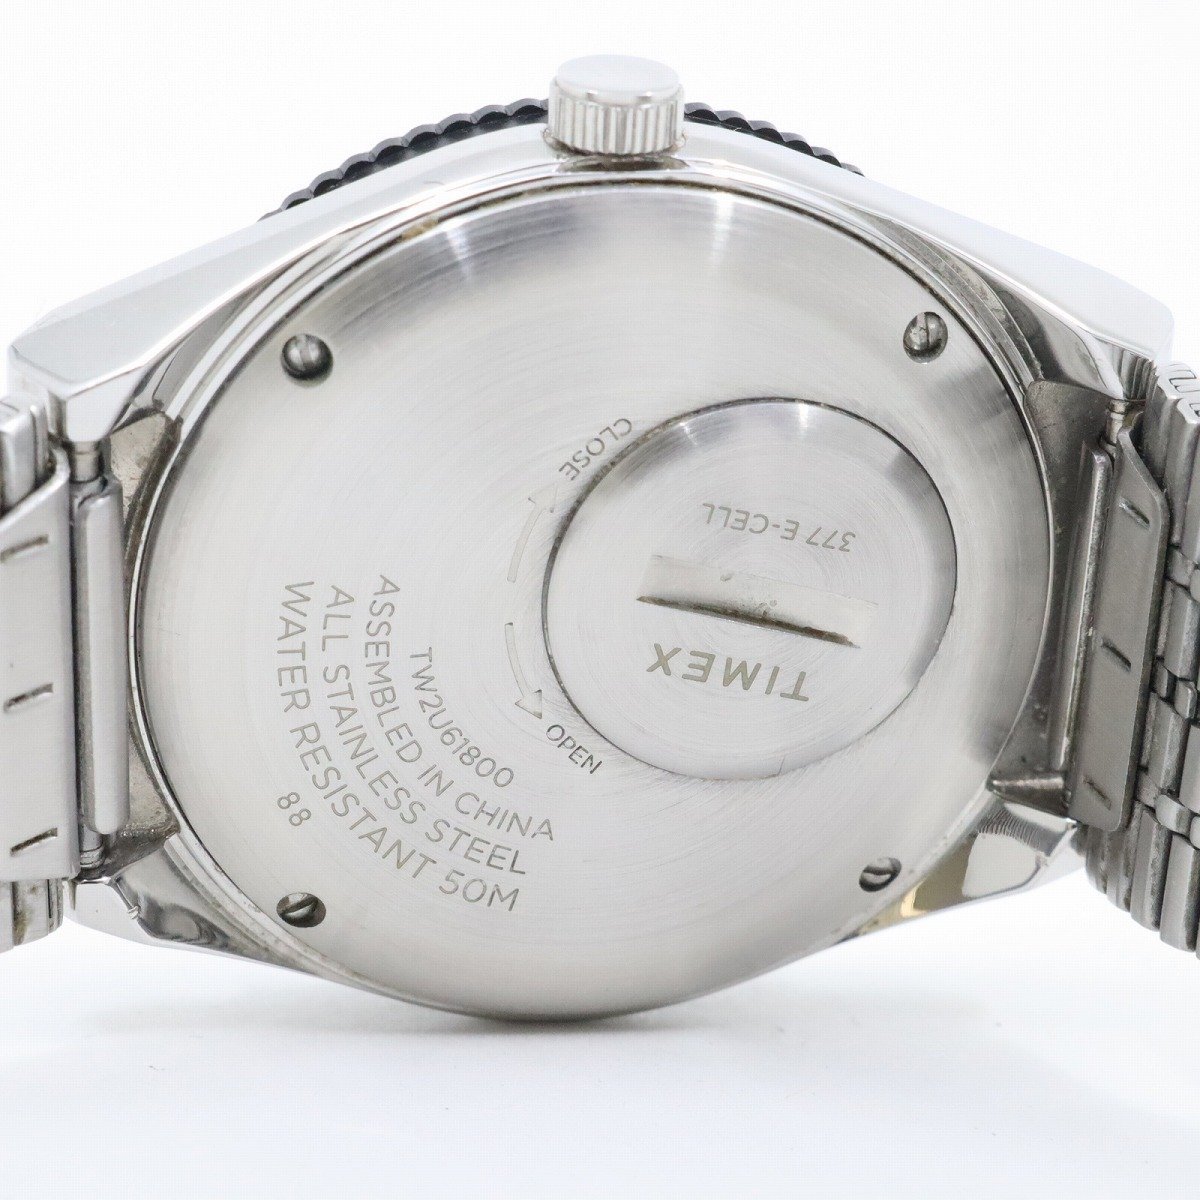 TIMEX кий Timex Q TIMEX кварц мужские наручные часы дата чёрный циферблат оригинальный SS ремень TW2U61800[... ломбард ]